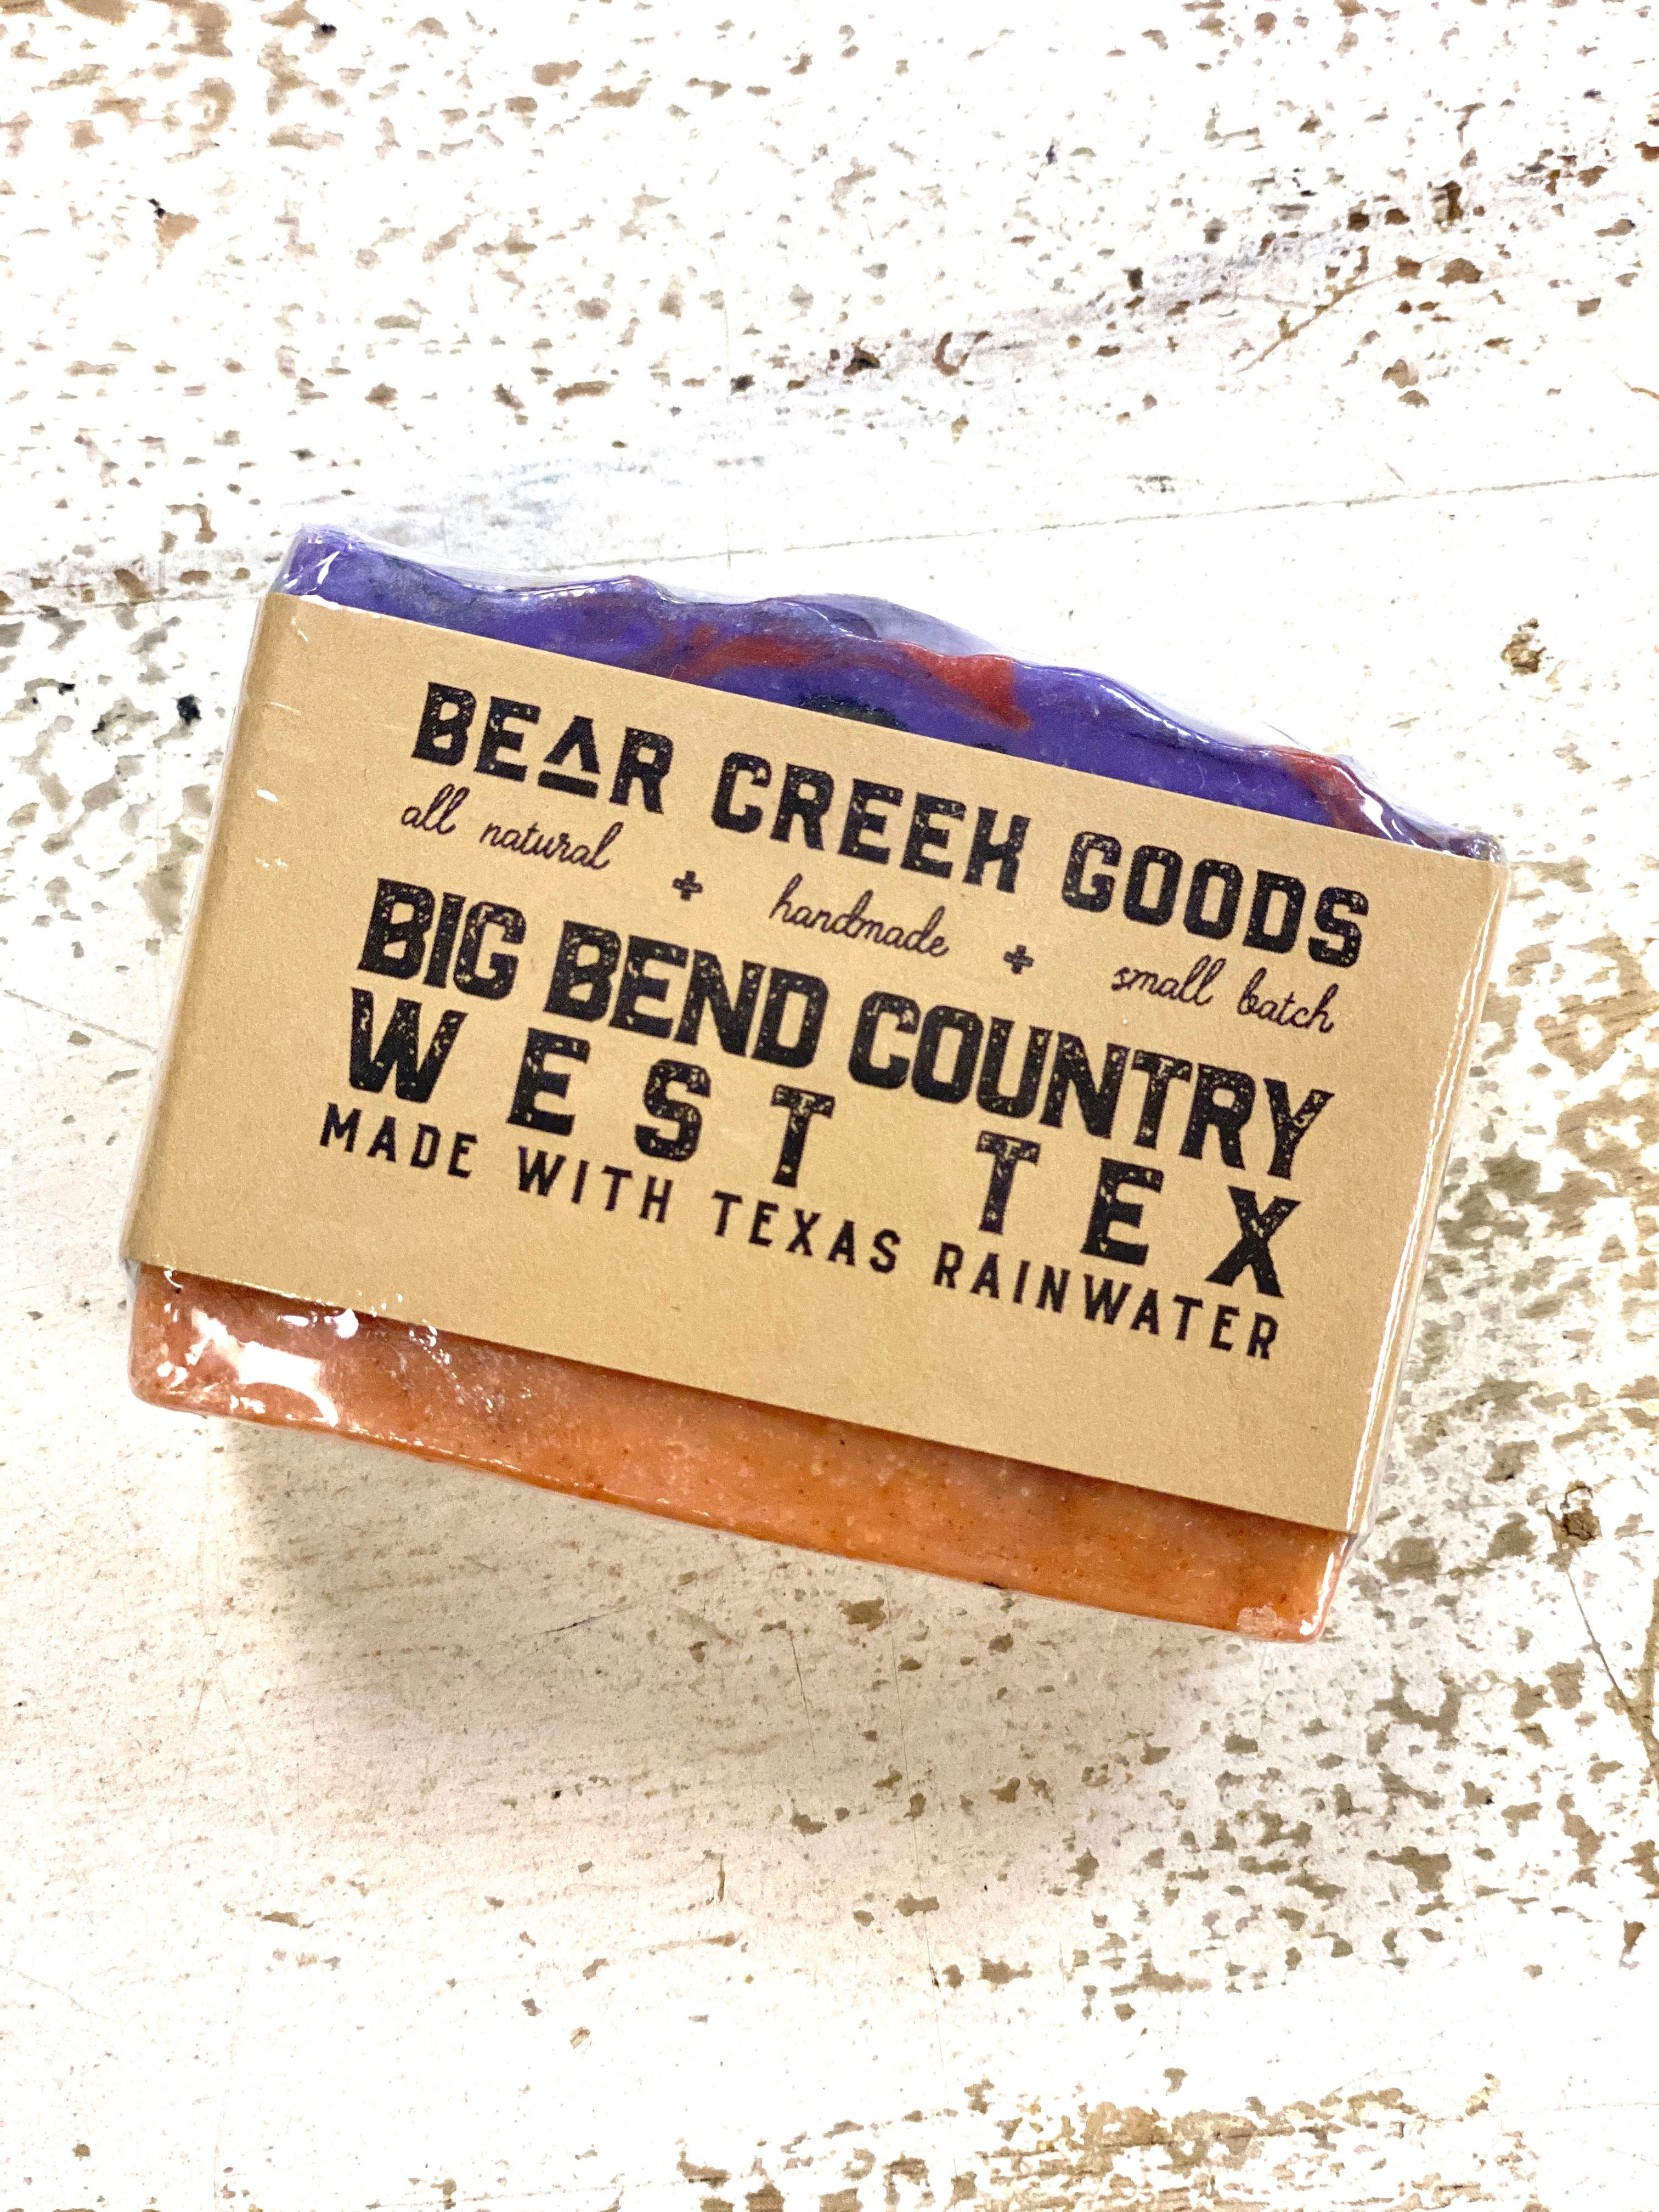 Productos de Bear Creek - Big Bend Country